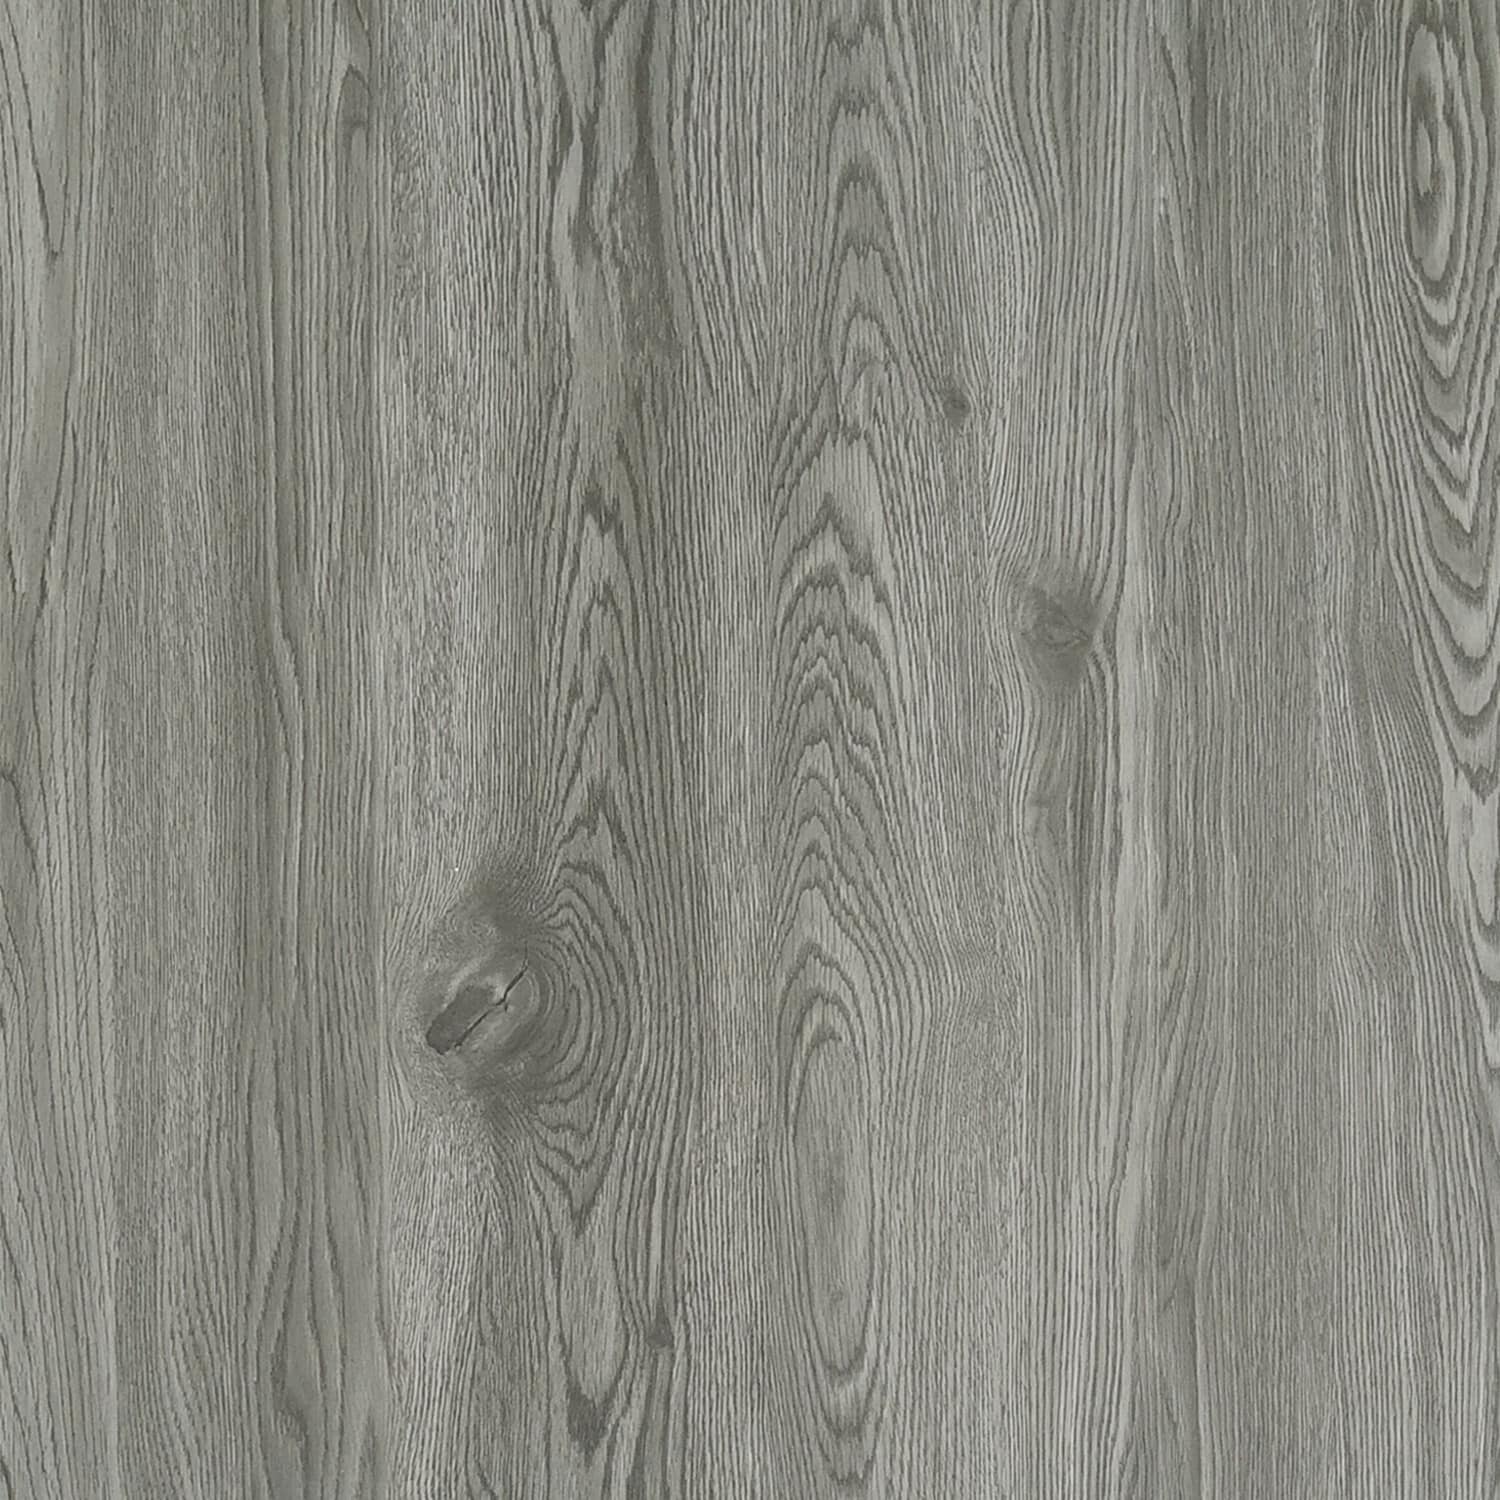 7" Smoke Grey LVT Planks 100% Waterproof Flooring, Luxury Vinyl Tiles  WPC LP45